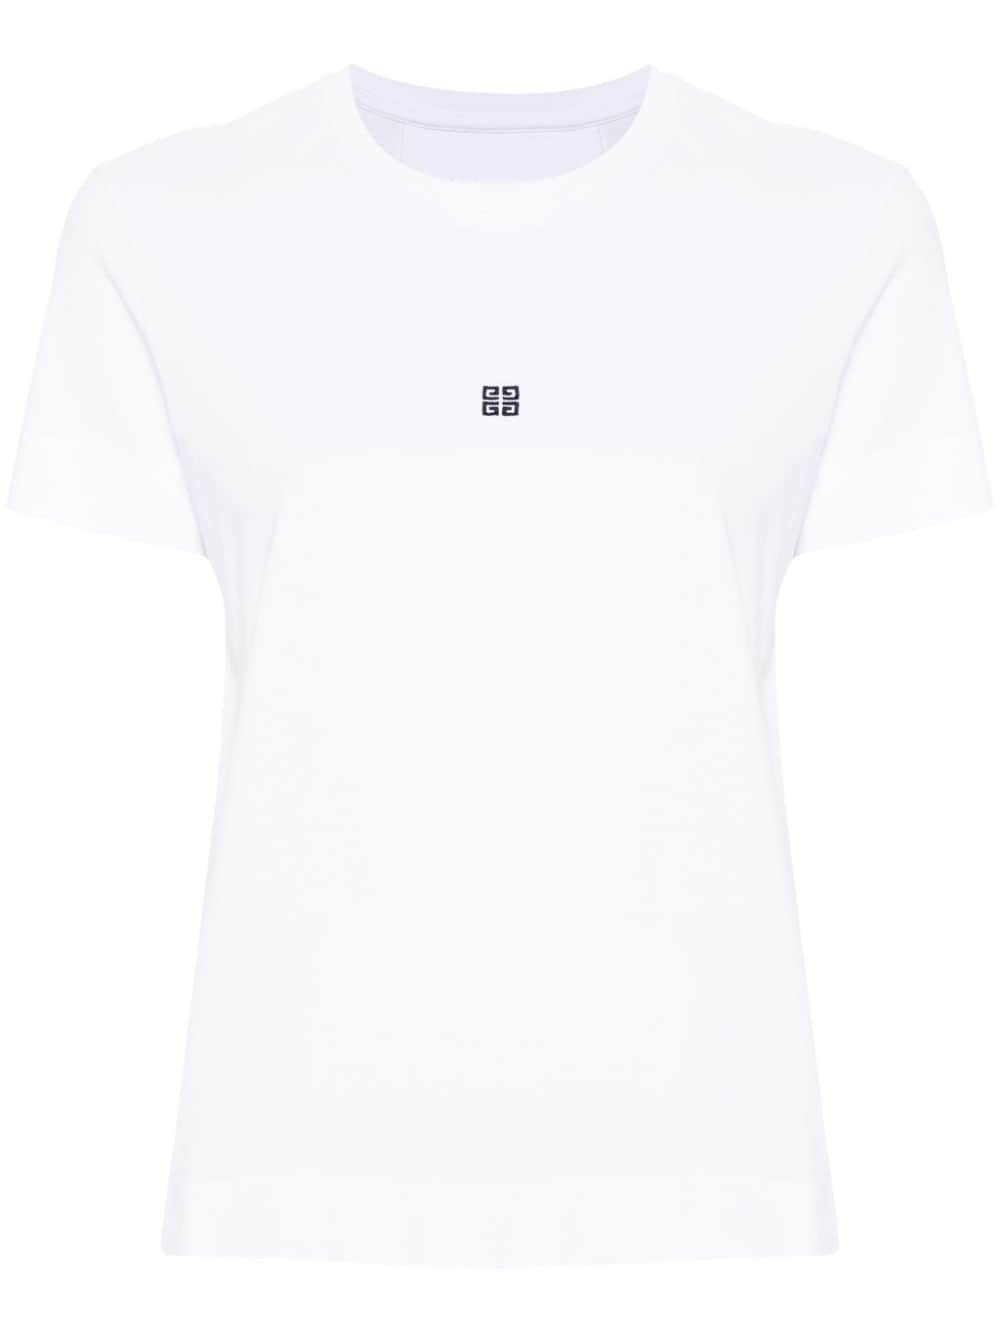 4G-motif cotton T-shirt